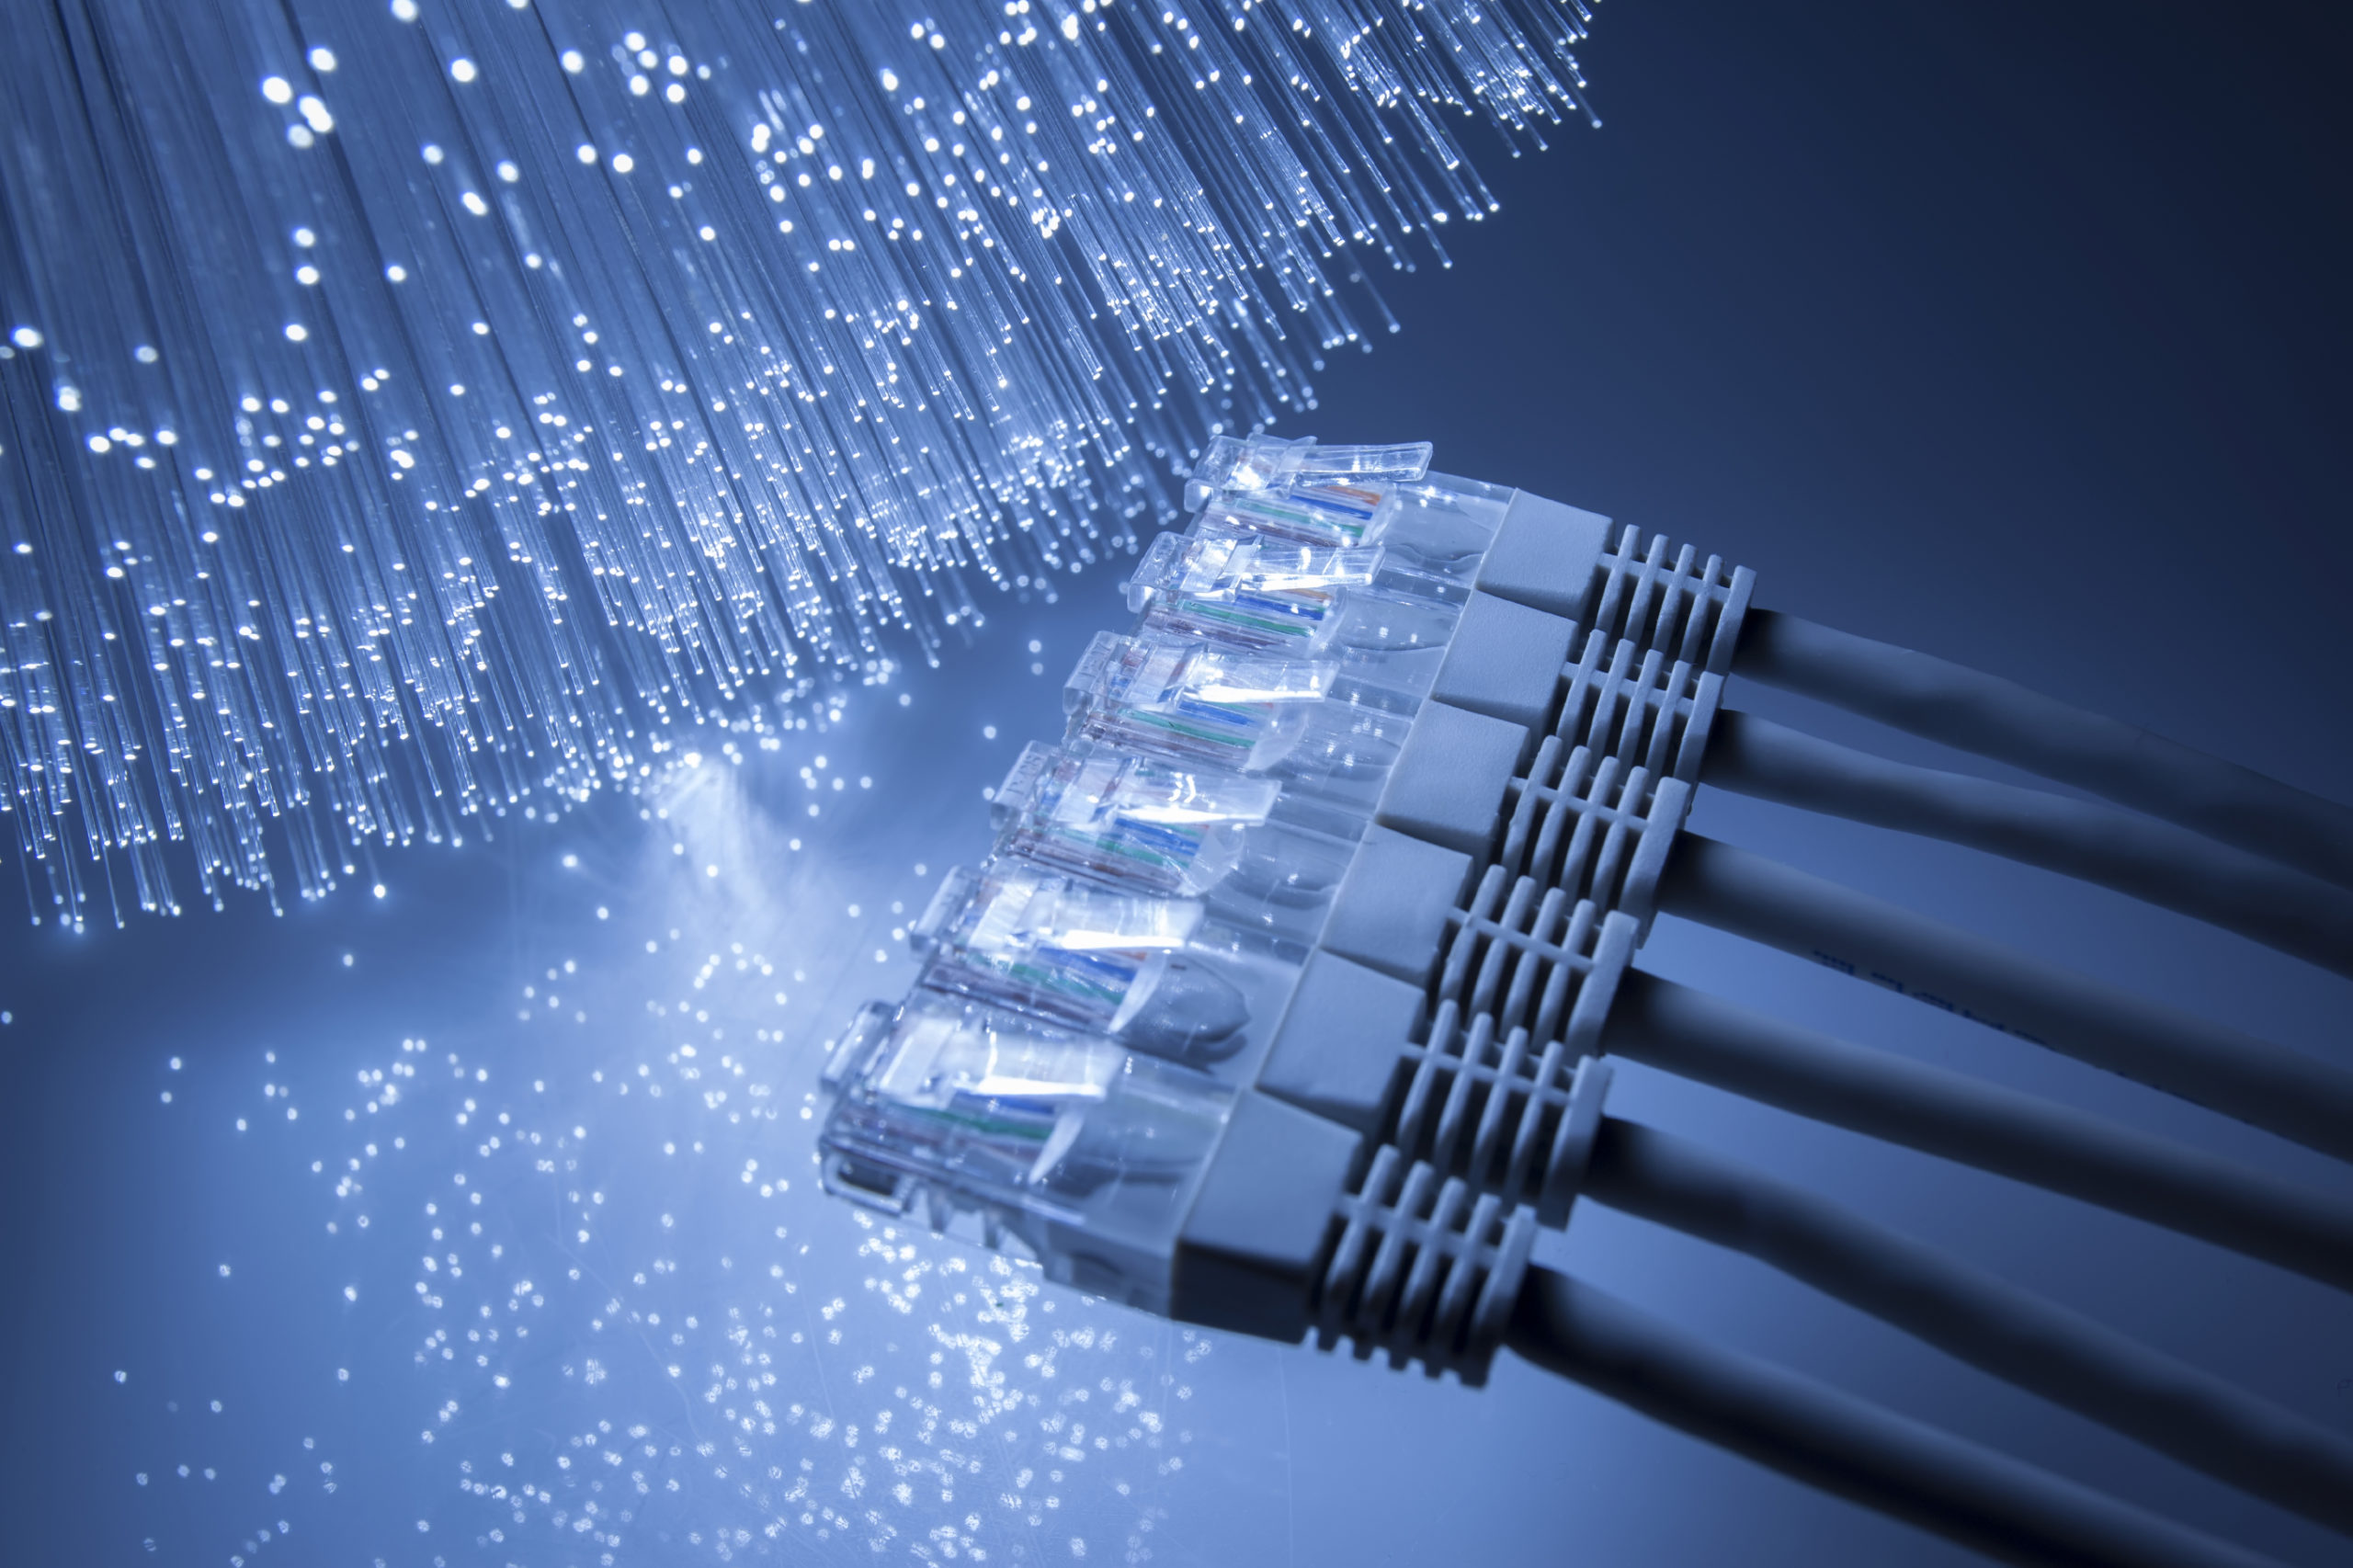 Каналы связи кабели. Провод Ethernet ВОЛС. Оптоволокно сетевой кабель. Волоконно-оптические линии связи. Сетевое оборудование компьютерных сетей оптоволокно.